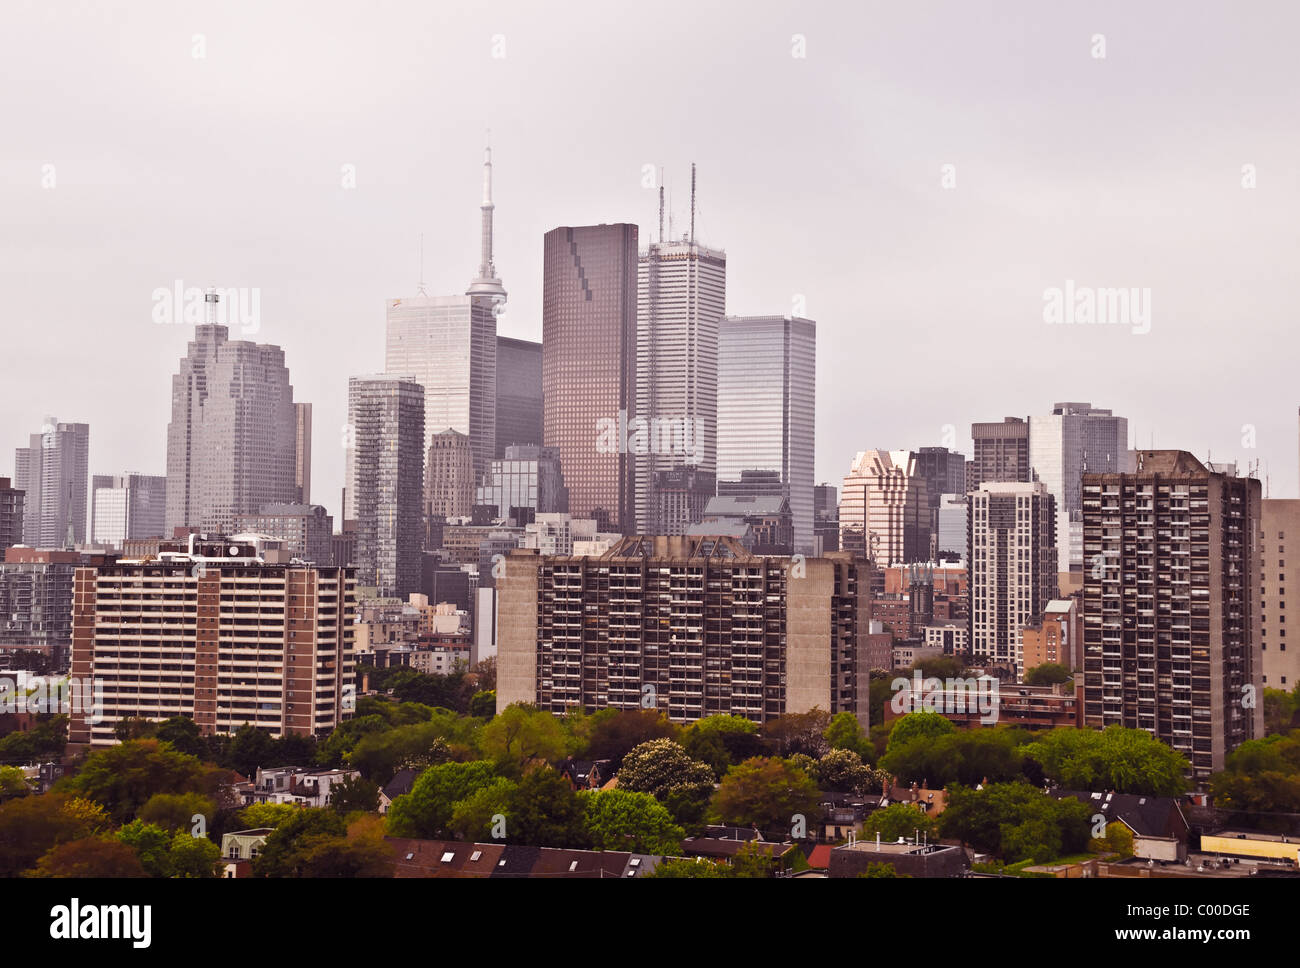 Un horizon de bureaux et d'immeubles d'appartements du centre-ville et du quartier résidentiel de Cabbagetown en premier plan, Toronto (Ontario), Canada. Banque D'Images